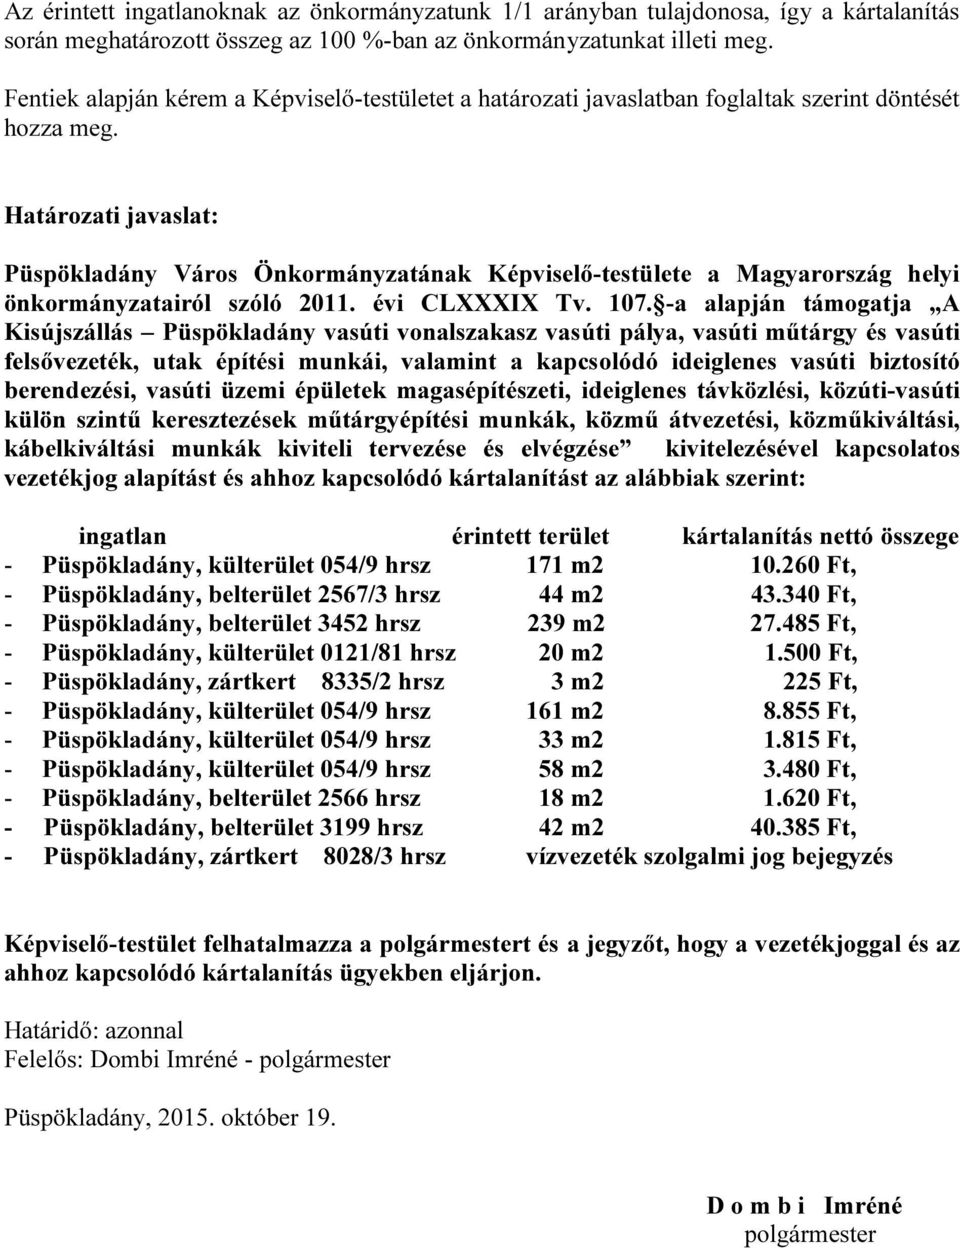 Határozati javaslat: Püspökladány Város Önkormányzatának Képviselő-testülete a Magyarország helyi önkormányzatairól szóló 2011. évi CLXXXIX Tv. 107.